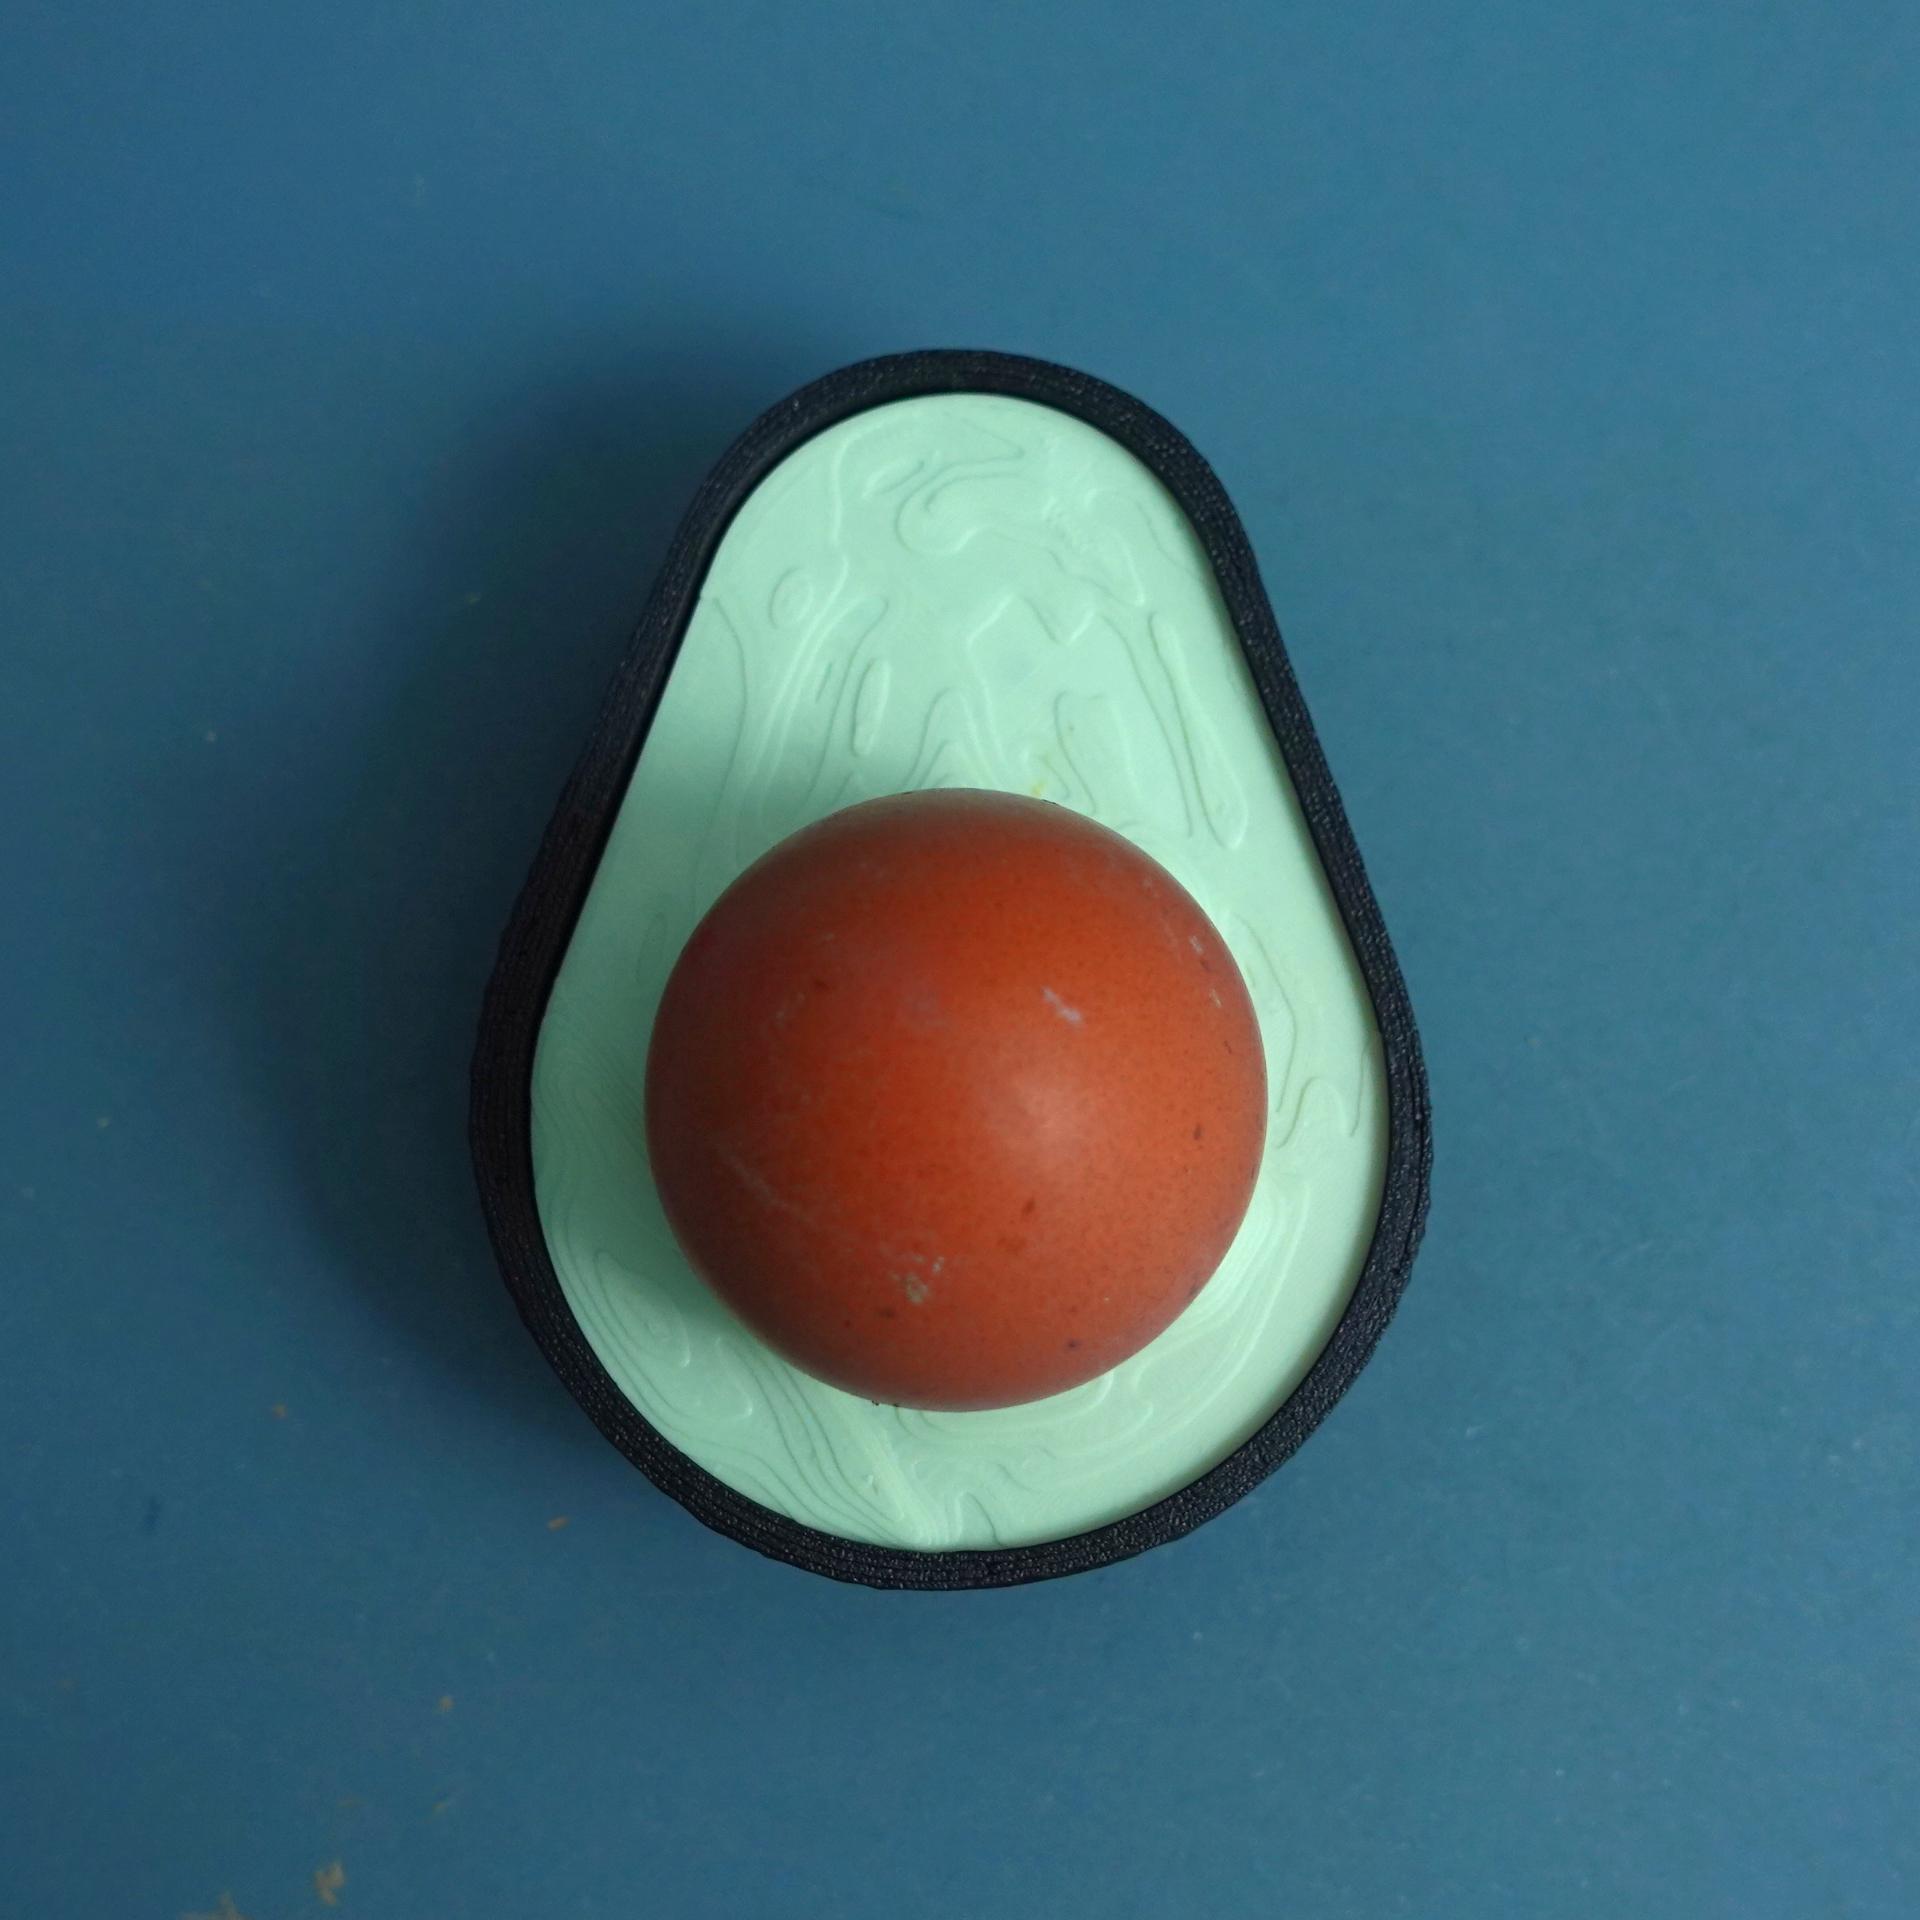 Egg cup “Avocado” 3d model